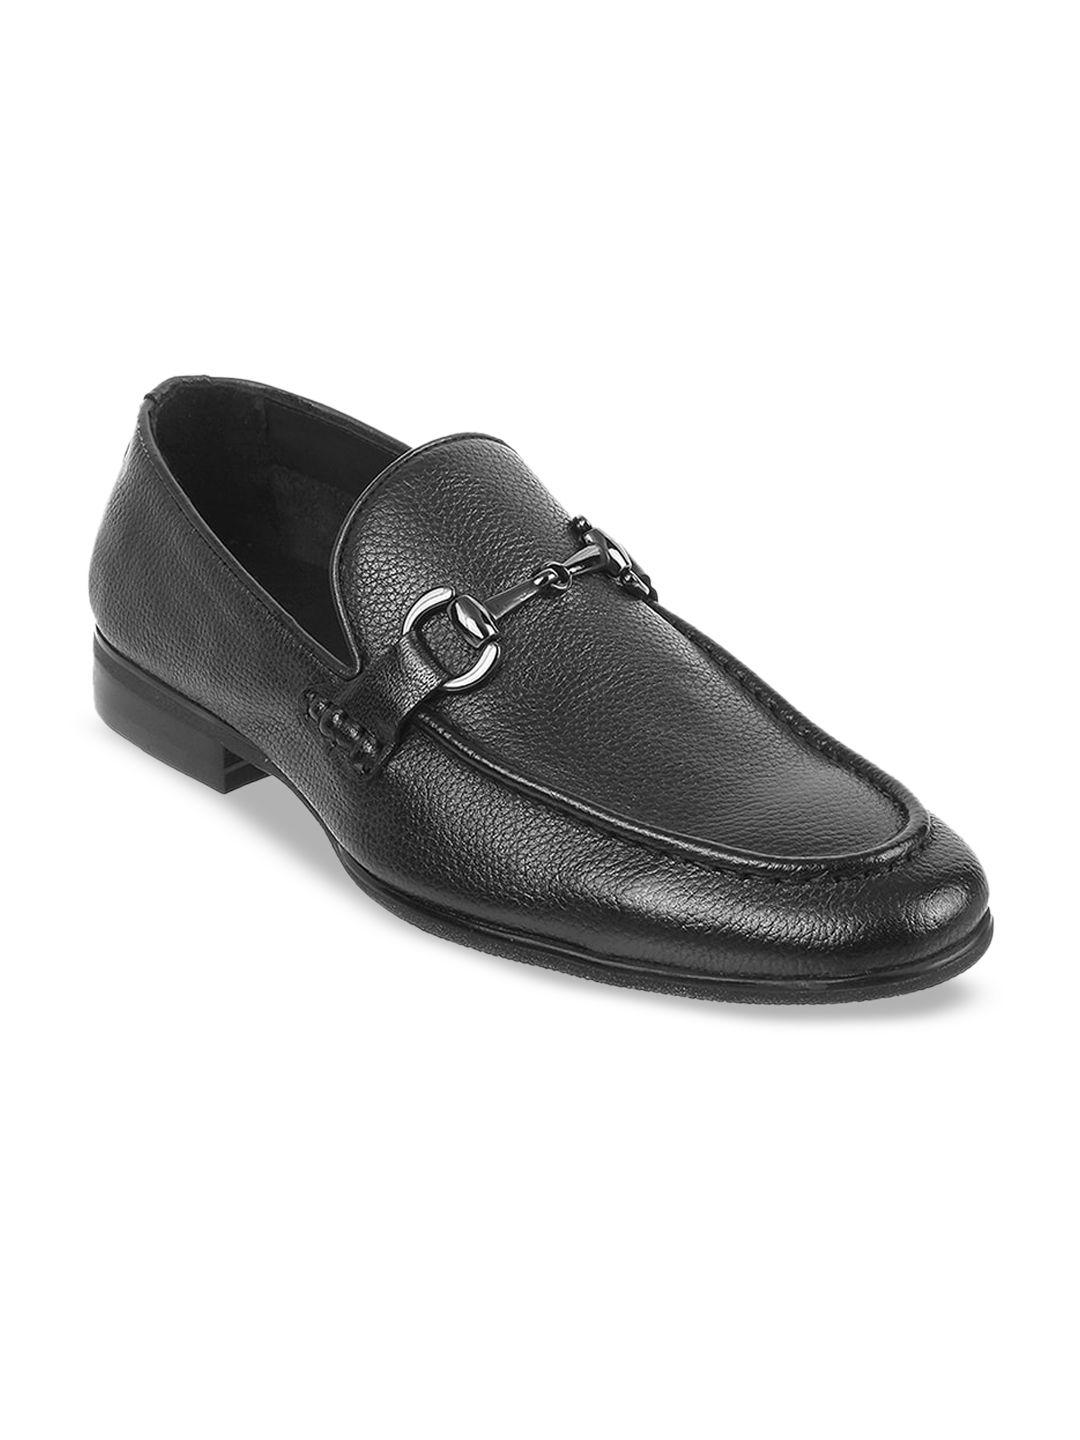 j.fontini men black solid leather formal loafers